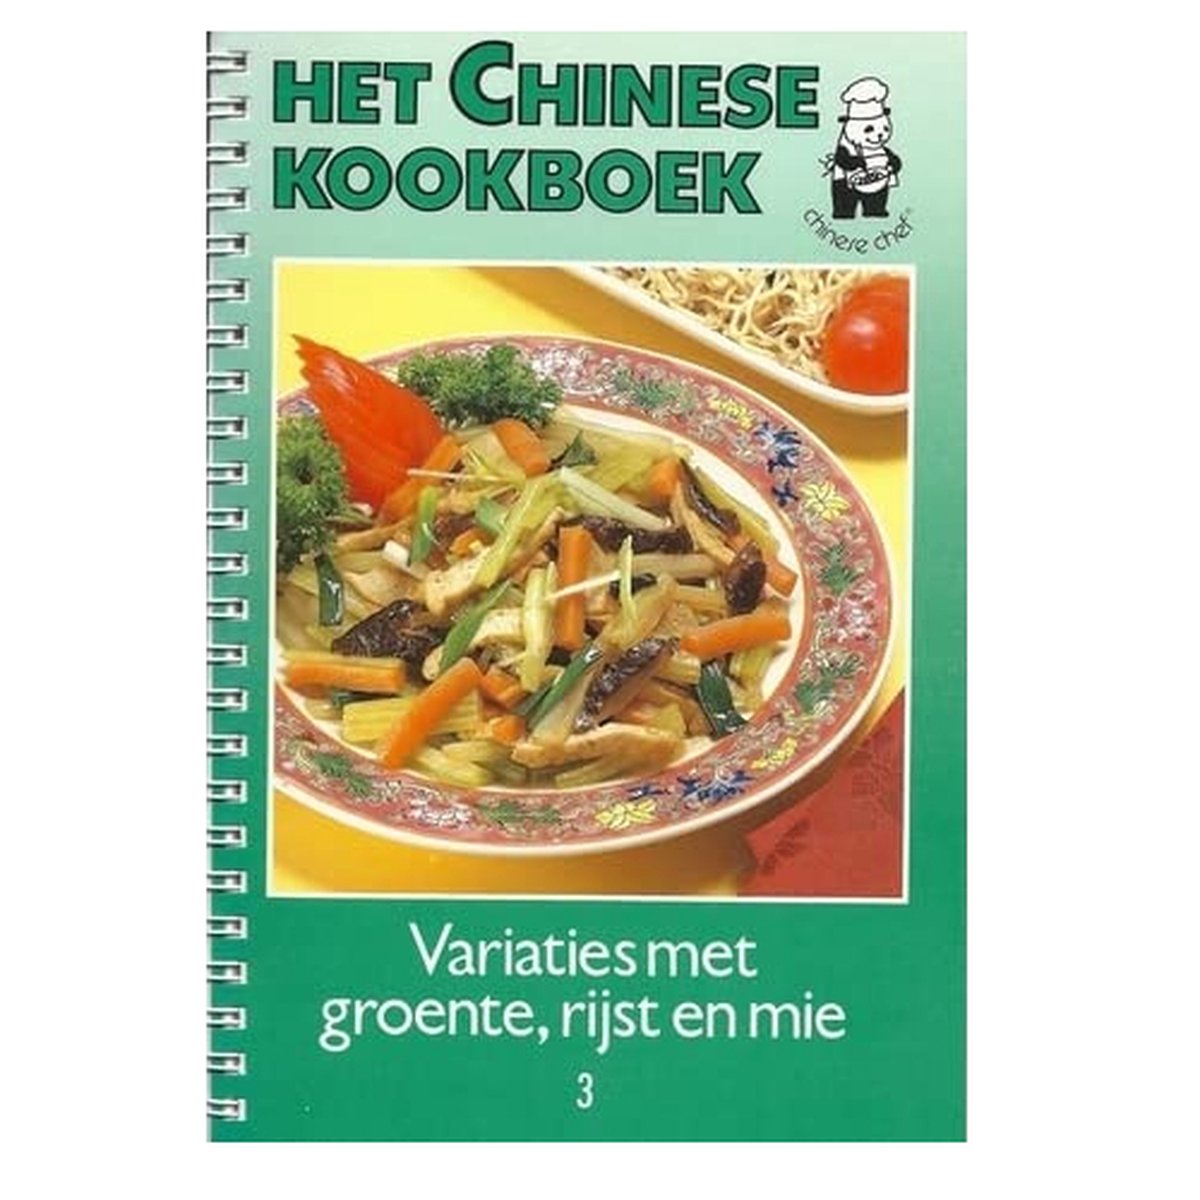 Het Chinese kookboek variaties met groente, rijst en mie 3